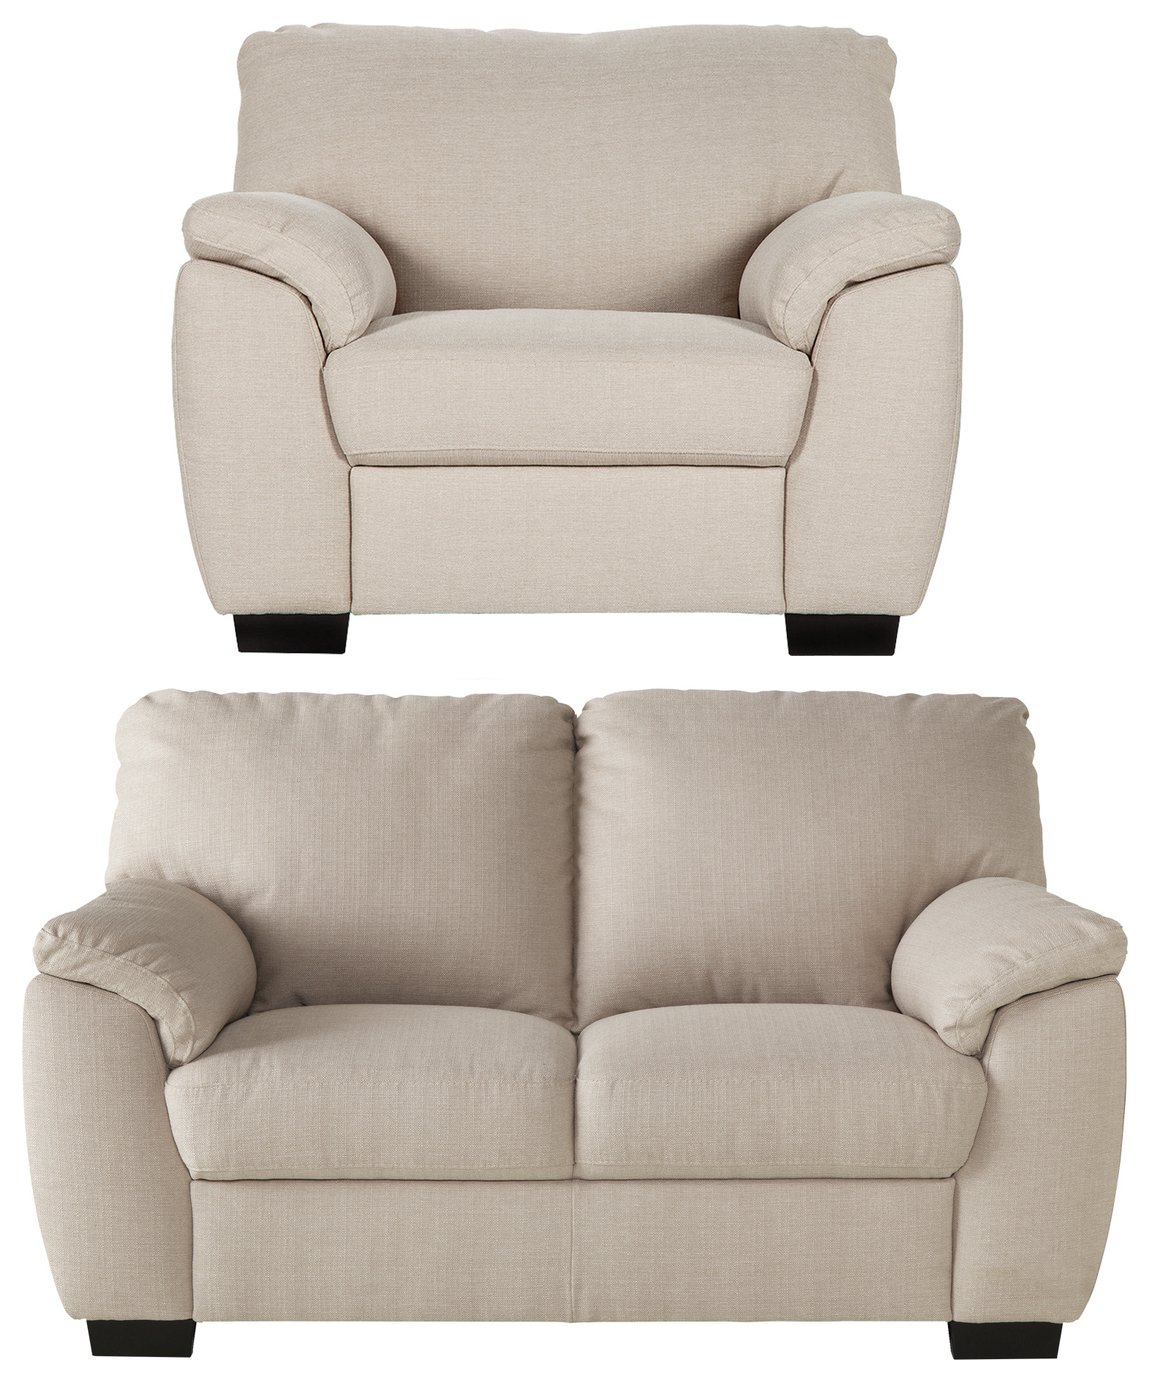 Argos Home Milano Fabric Regular - Sofa and Chair Reviews